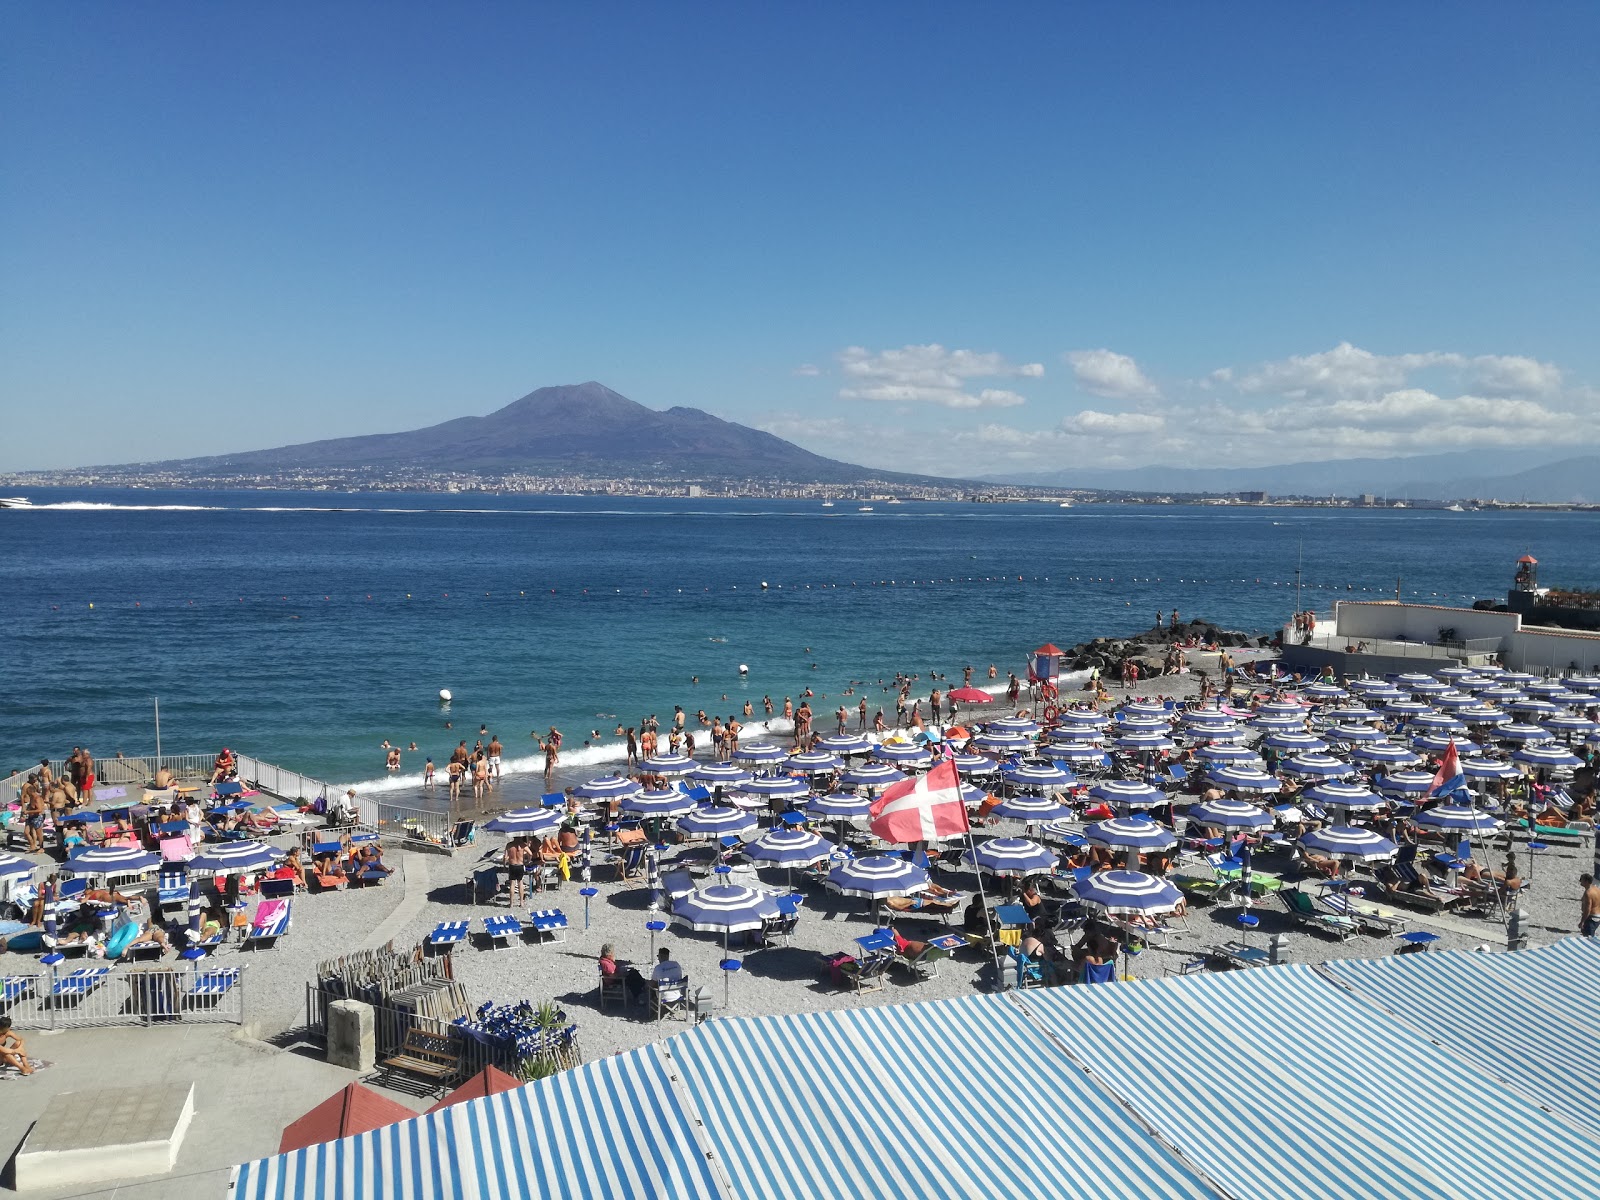 Zdjęcie Pozzano beach z powierzchnią szary drobny kamyk